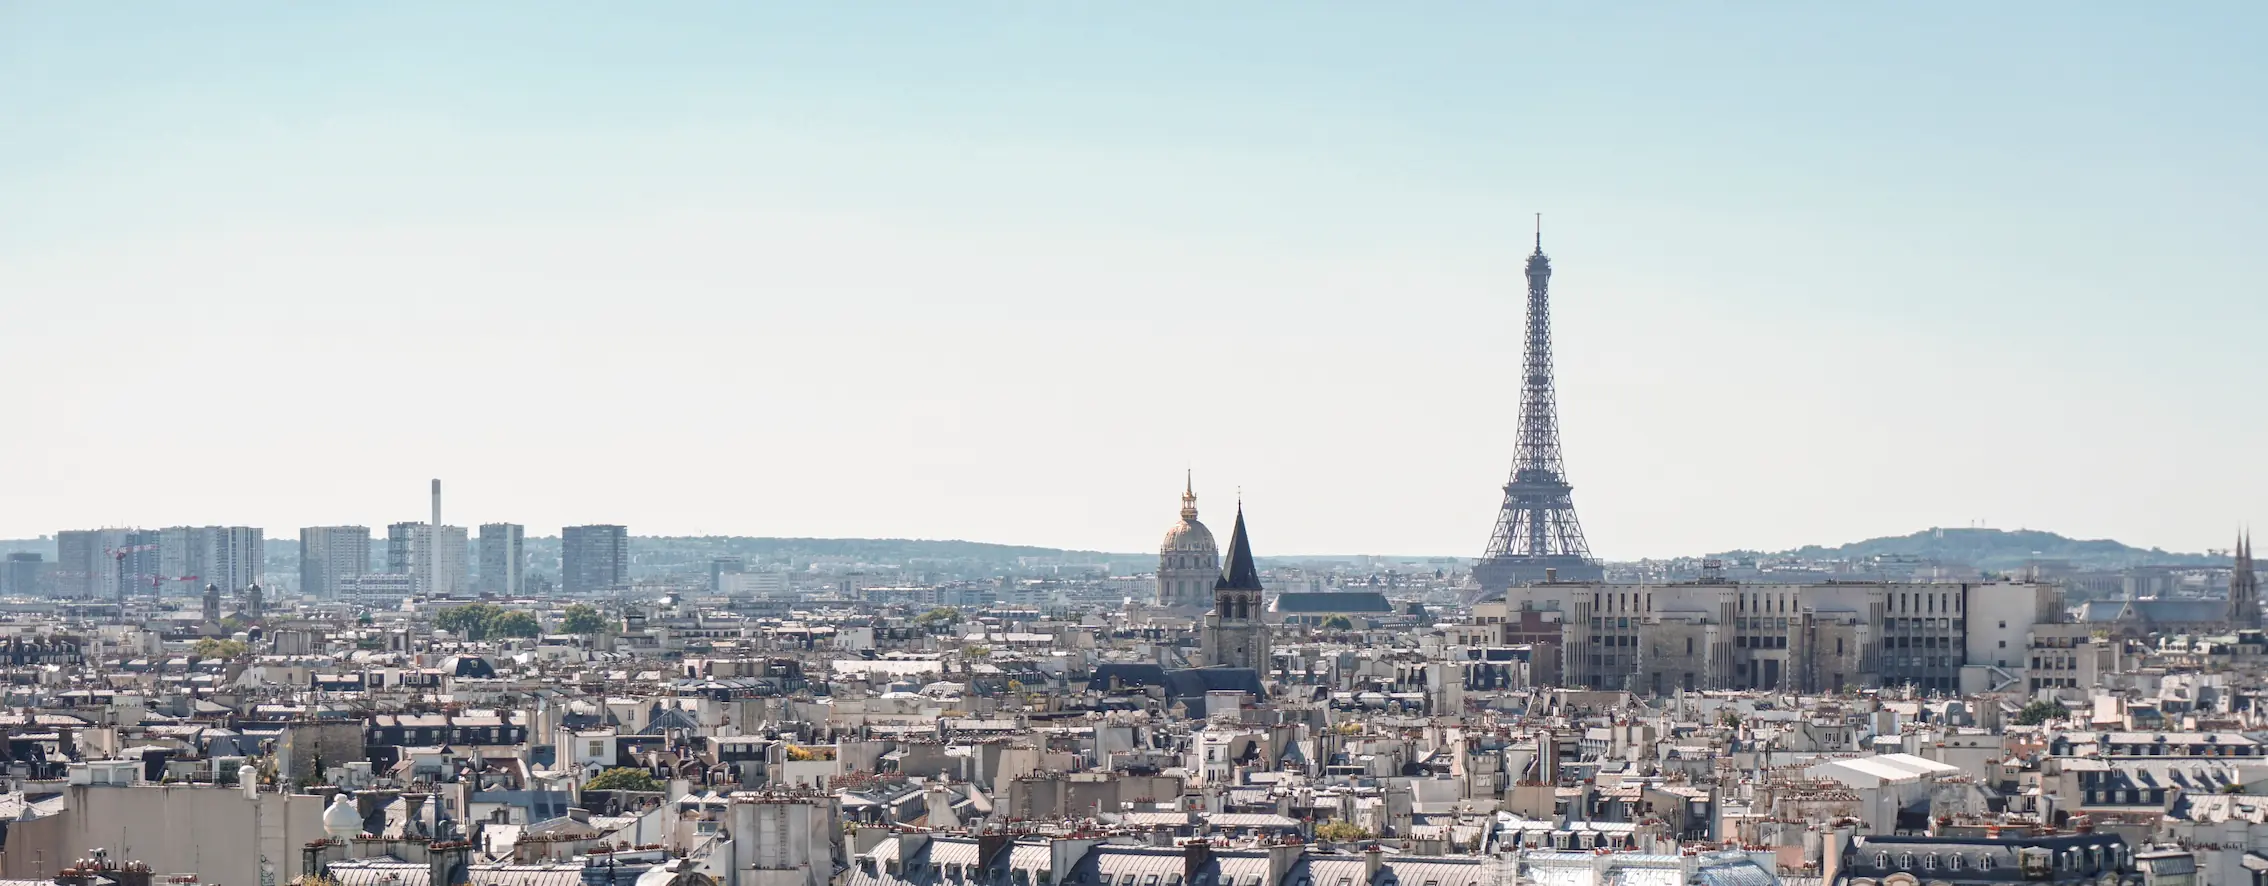 Photo of the Paris skyline